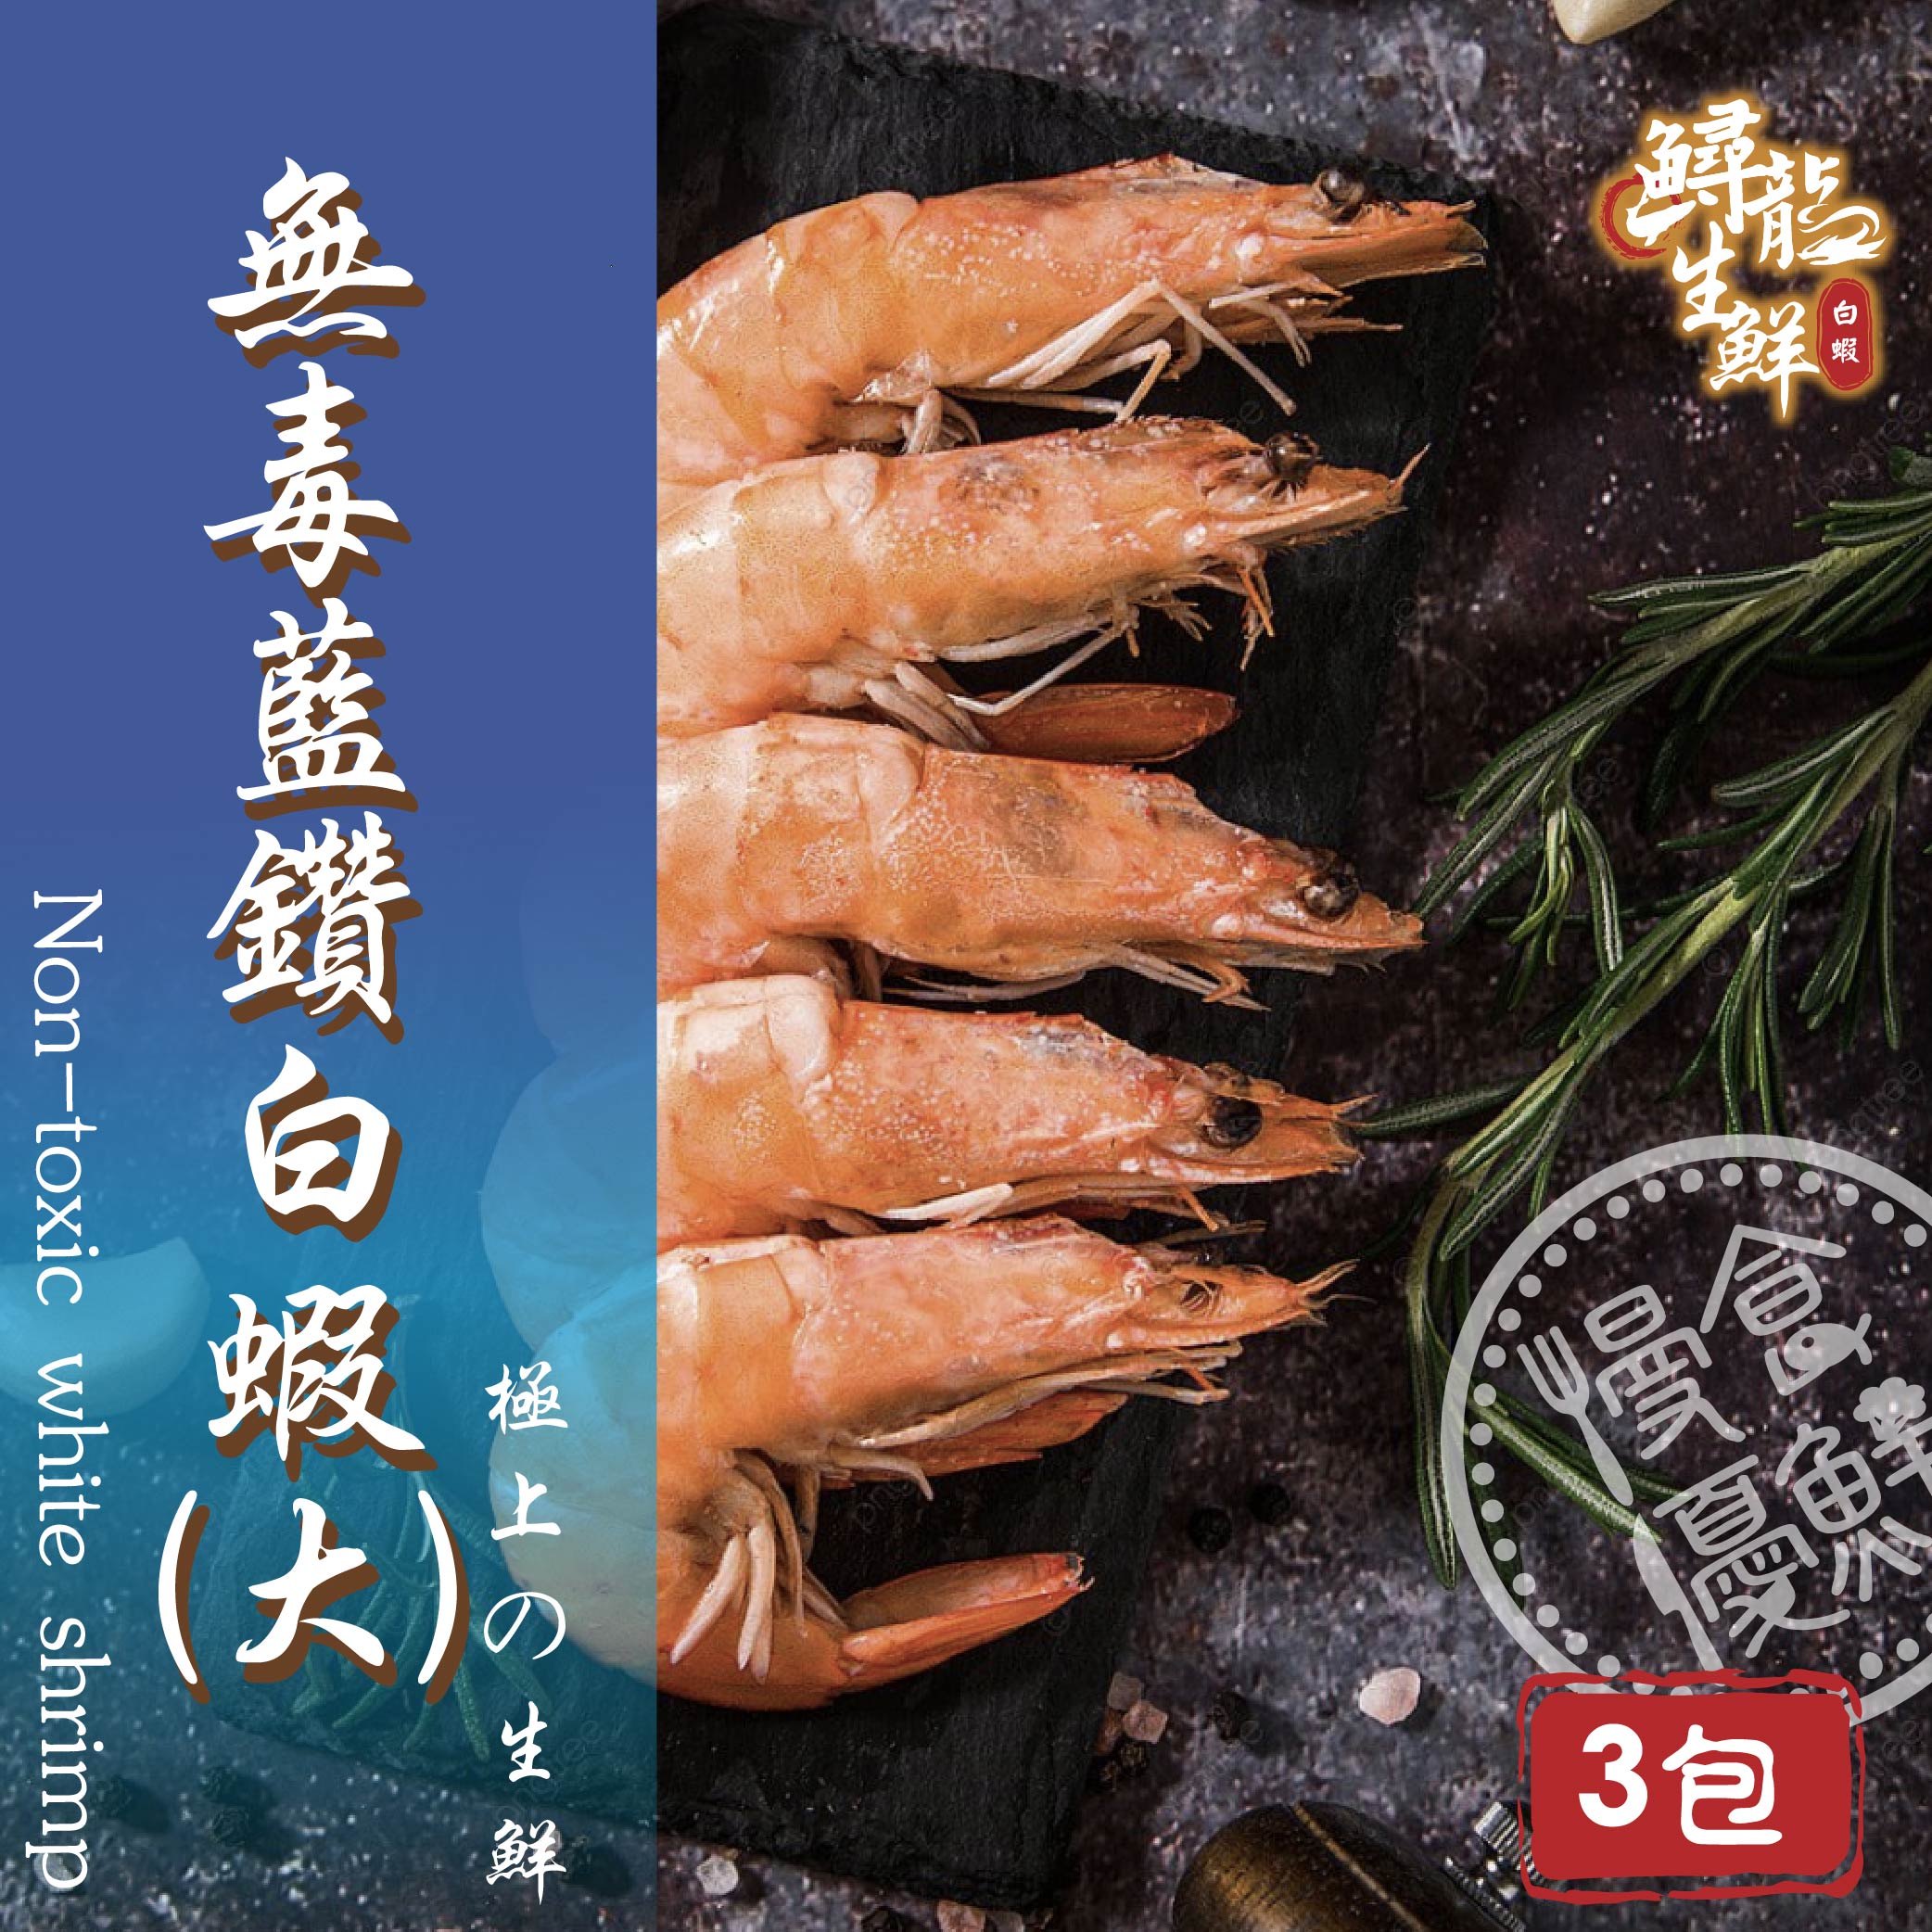 【慢食優鮮】無毒藍鑽白蝦 (250g/冷凍) 三入組 -60℃急速冷凍 無抗生素 無化學添加物